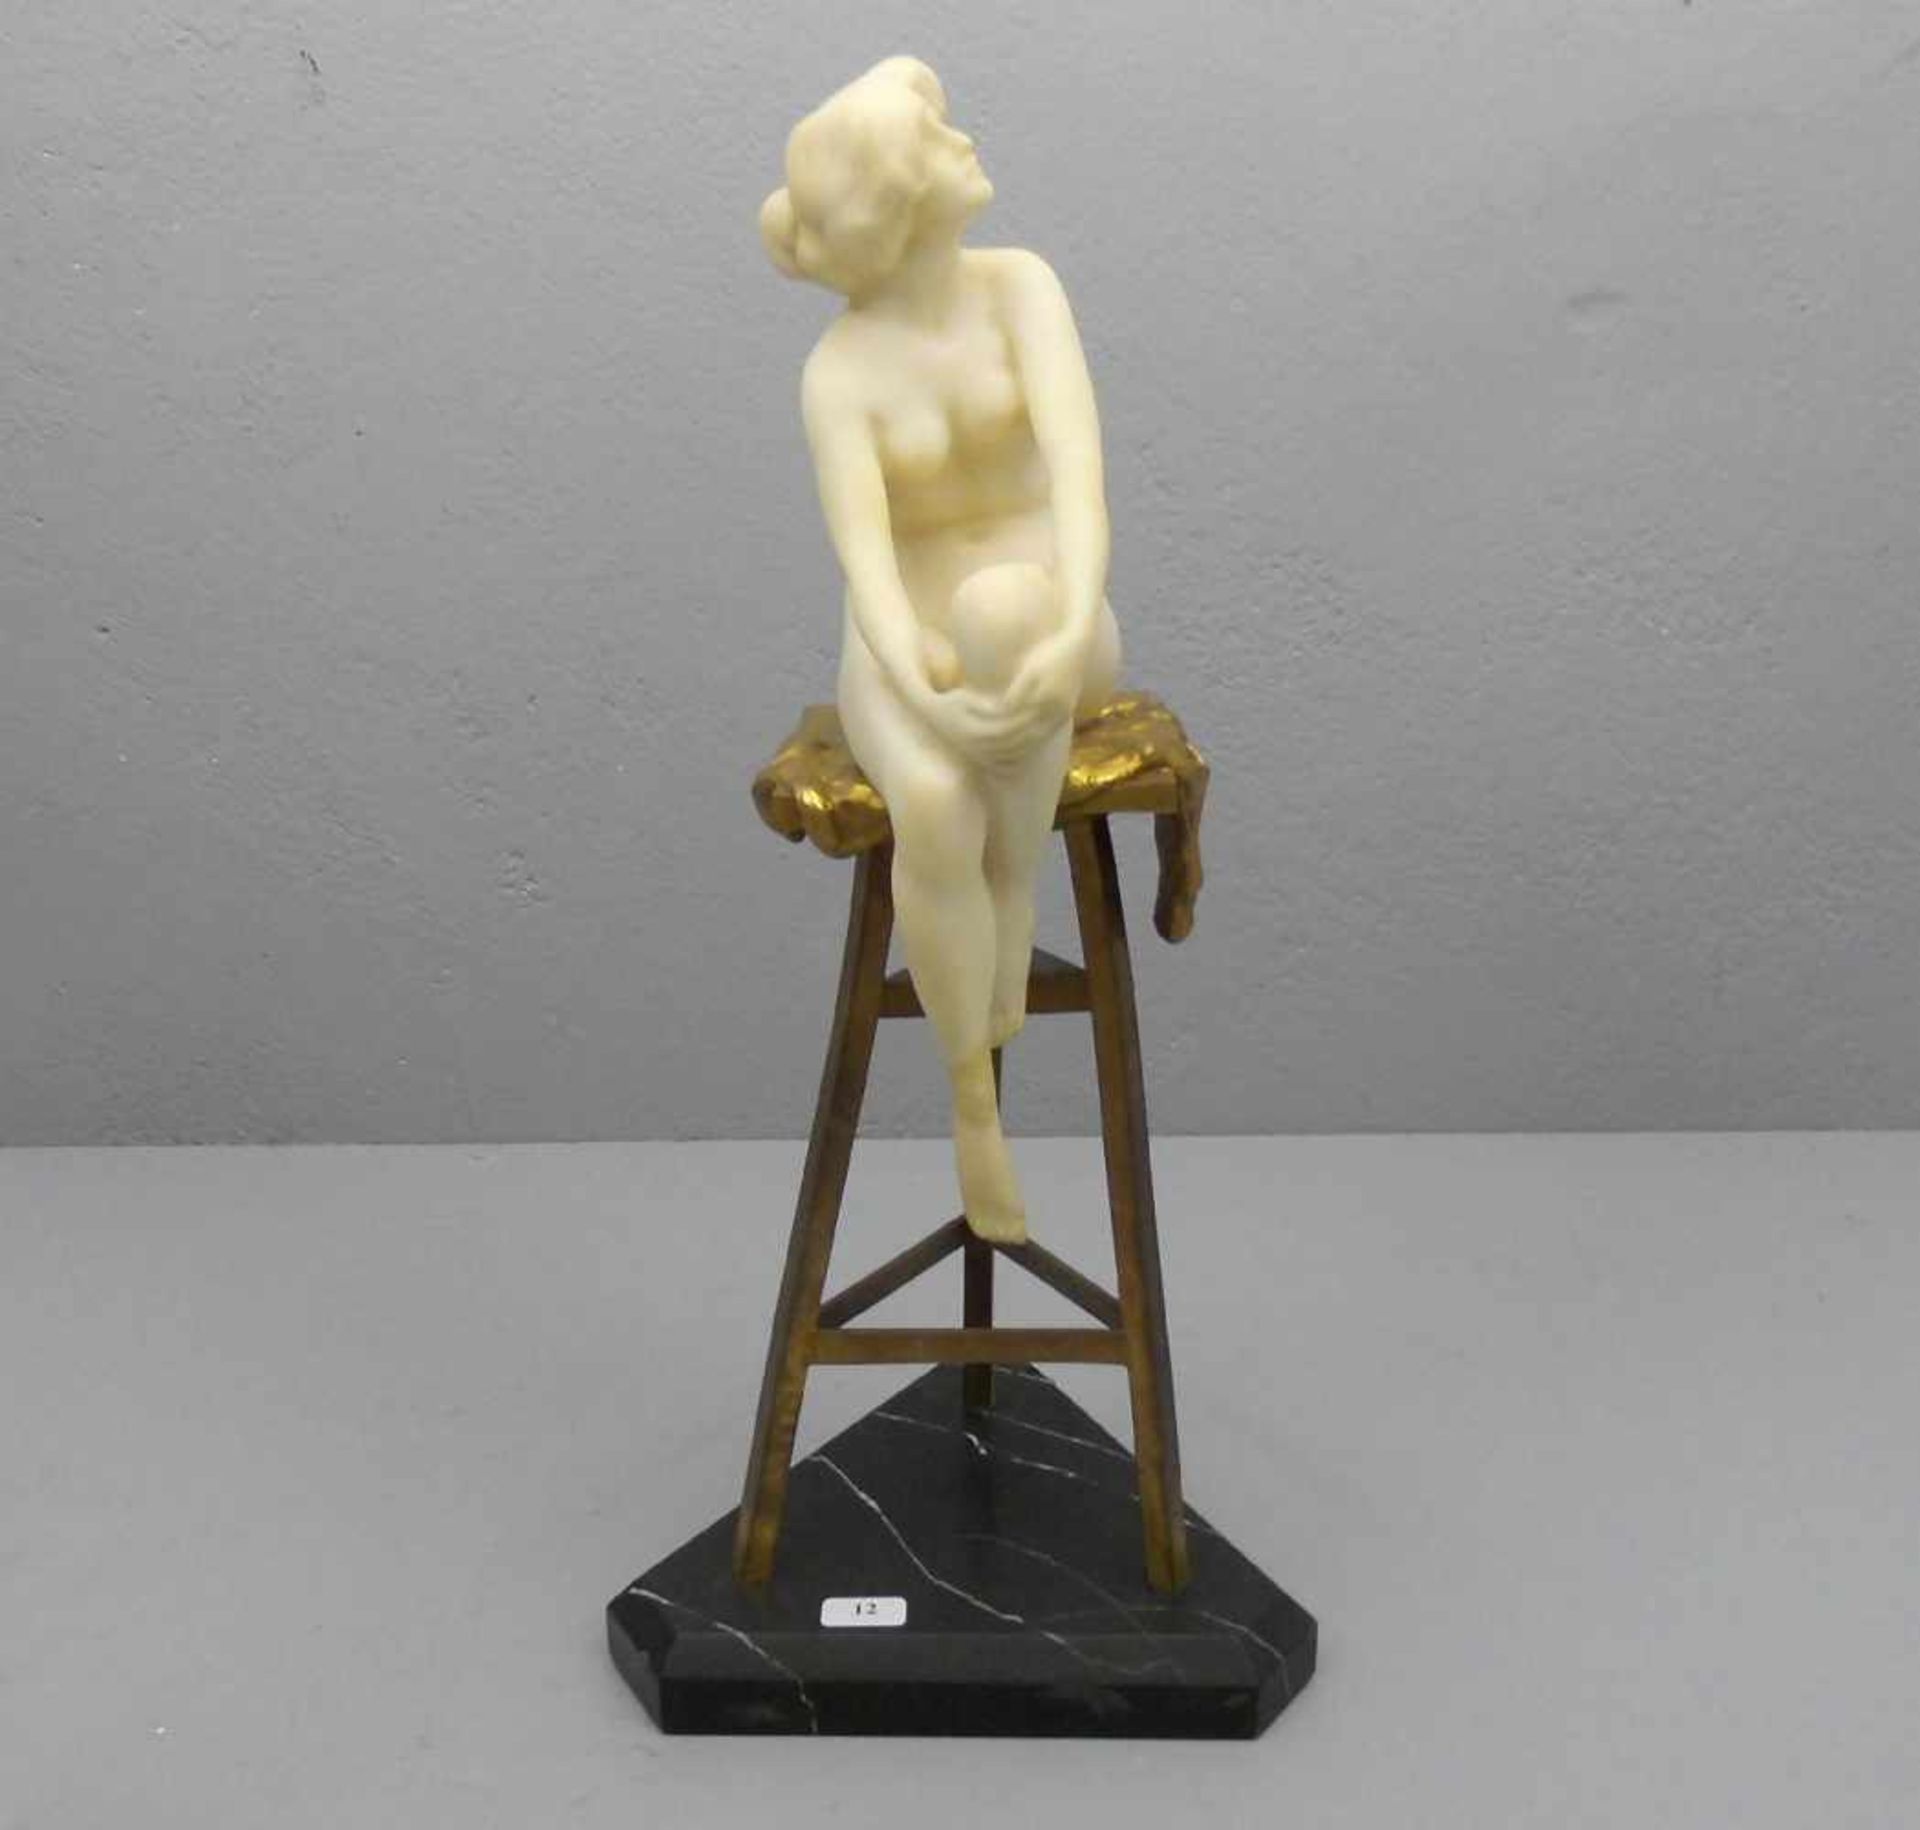 MARCUSE, RUDOLF (gelegentlich auch Markuse; Berlin 1878- ca. 1930), Skulptur: "Das Modell - - Bild 2 aus 7